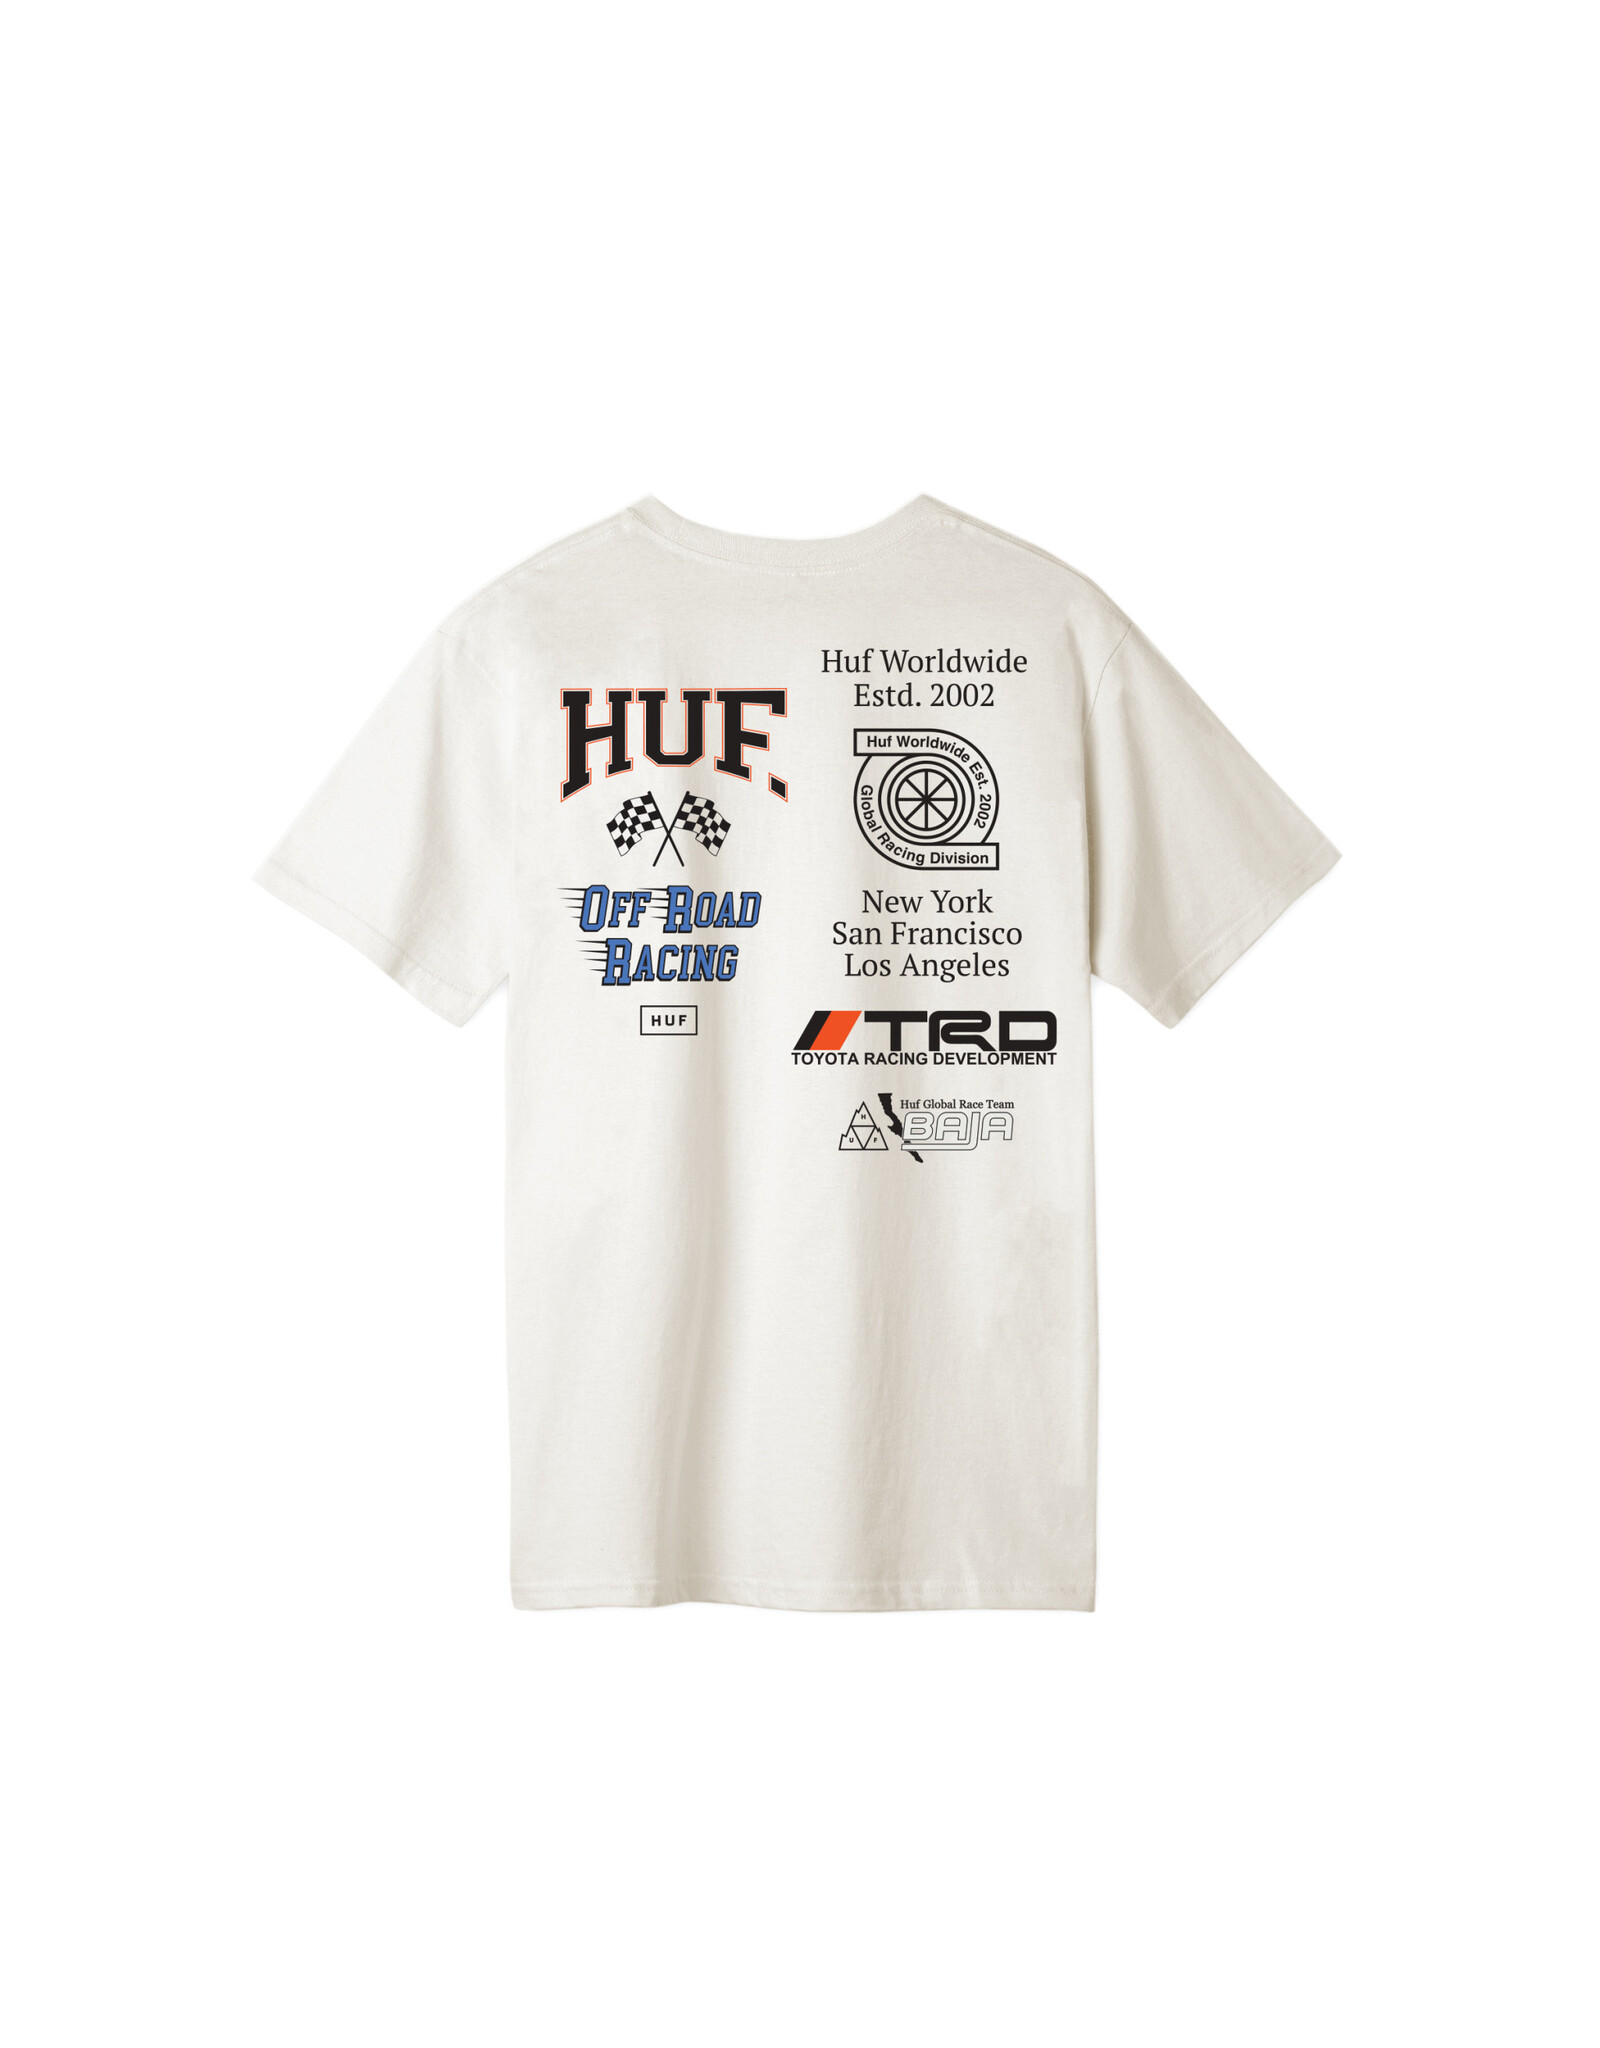 HUF Worldwide S/S Tee Toyota Racing